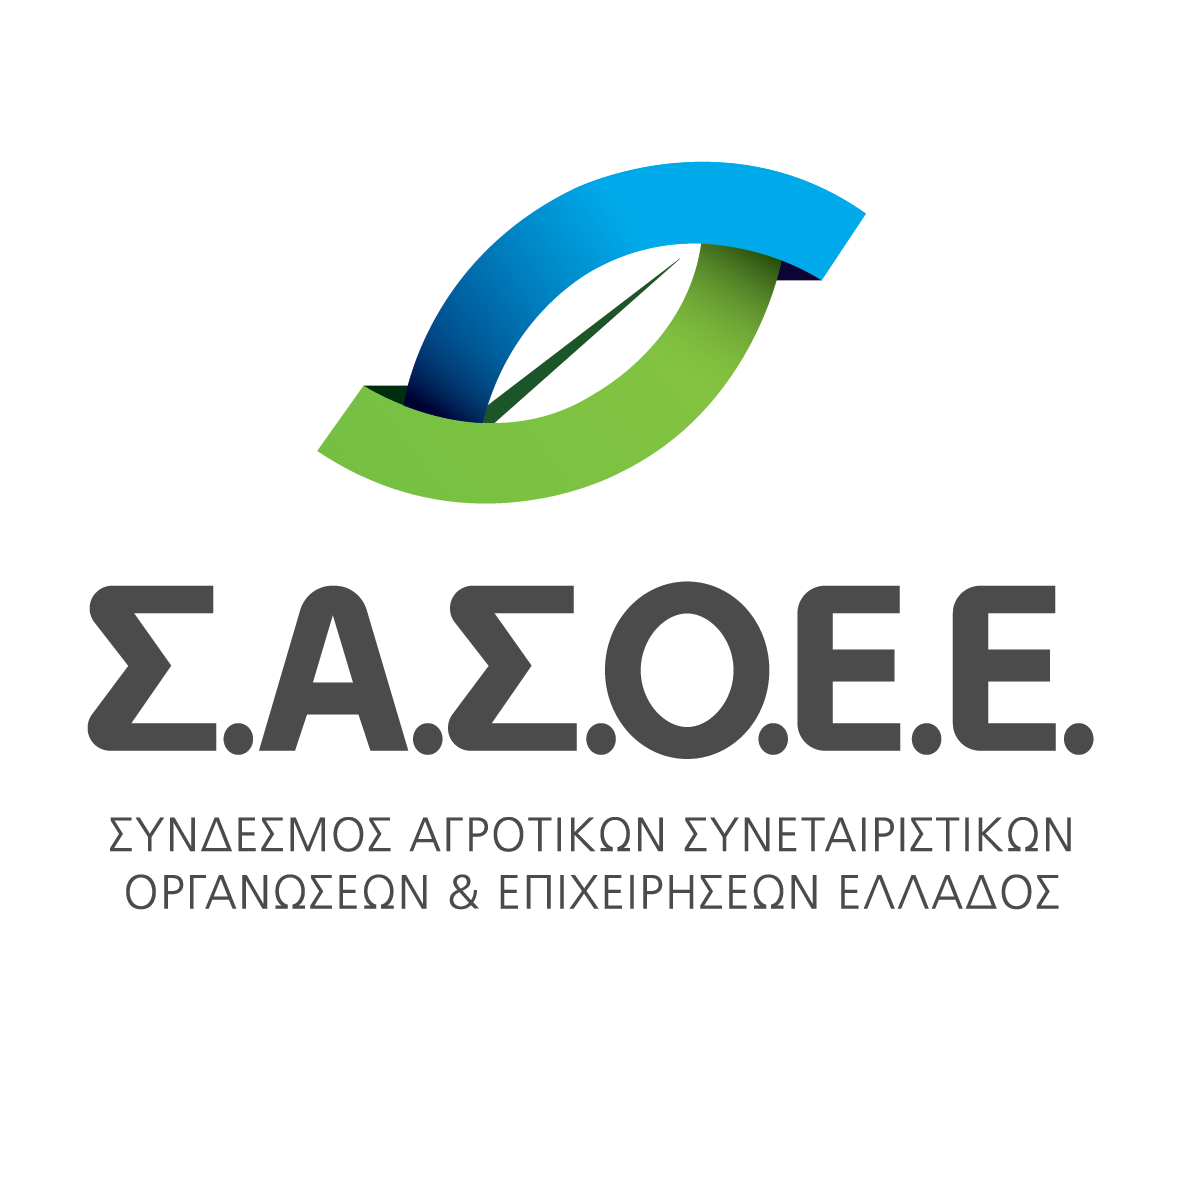 ΣΑΣΟΕΕ Logo